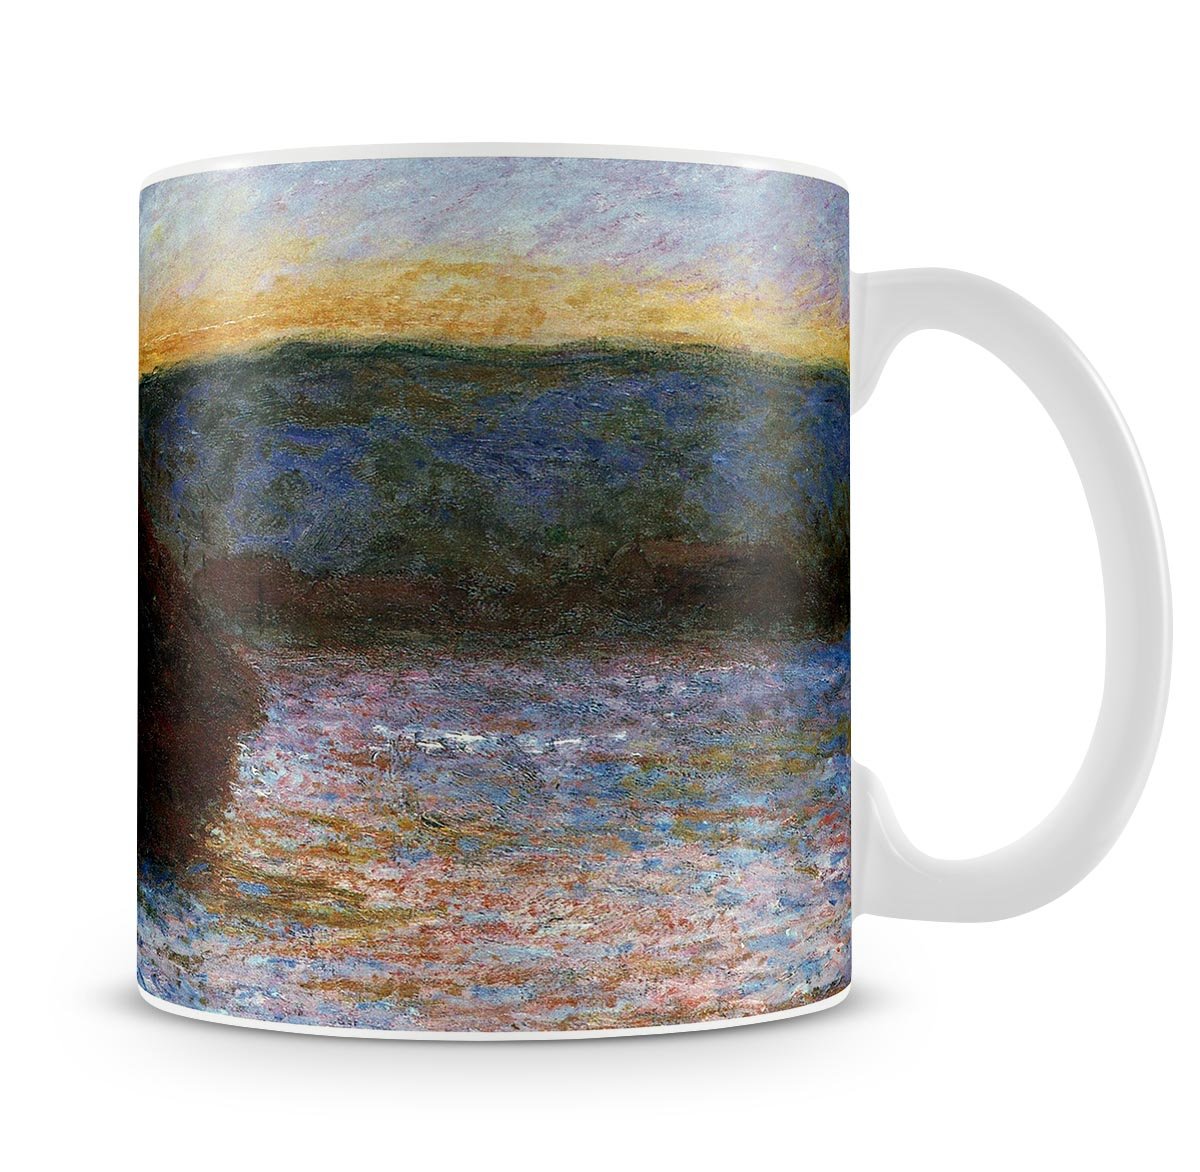 Haylofts thaw sunset by Monet Mug - Canvas Art Rocks - 4